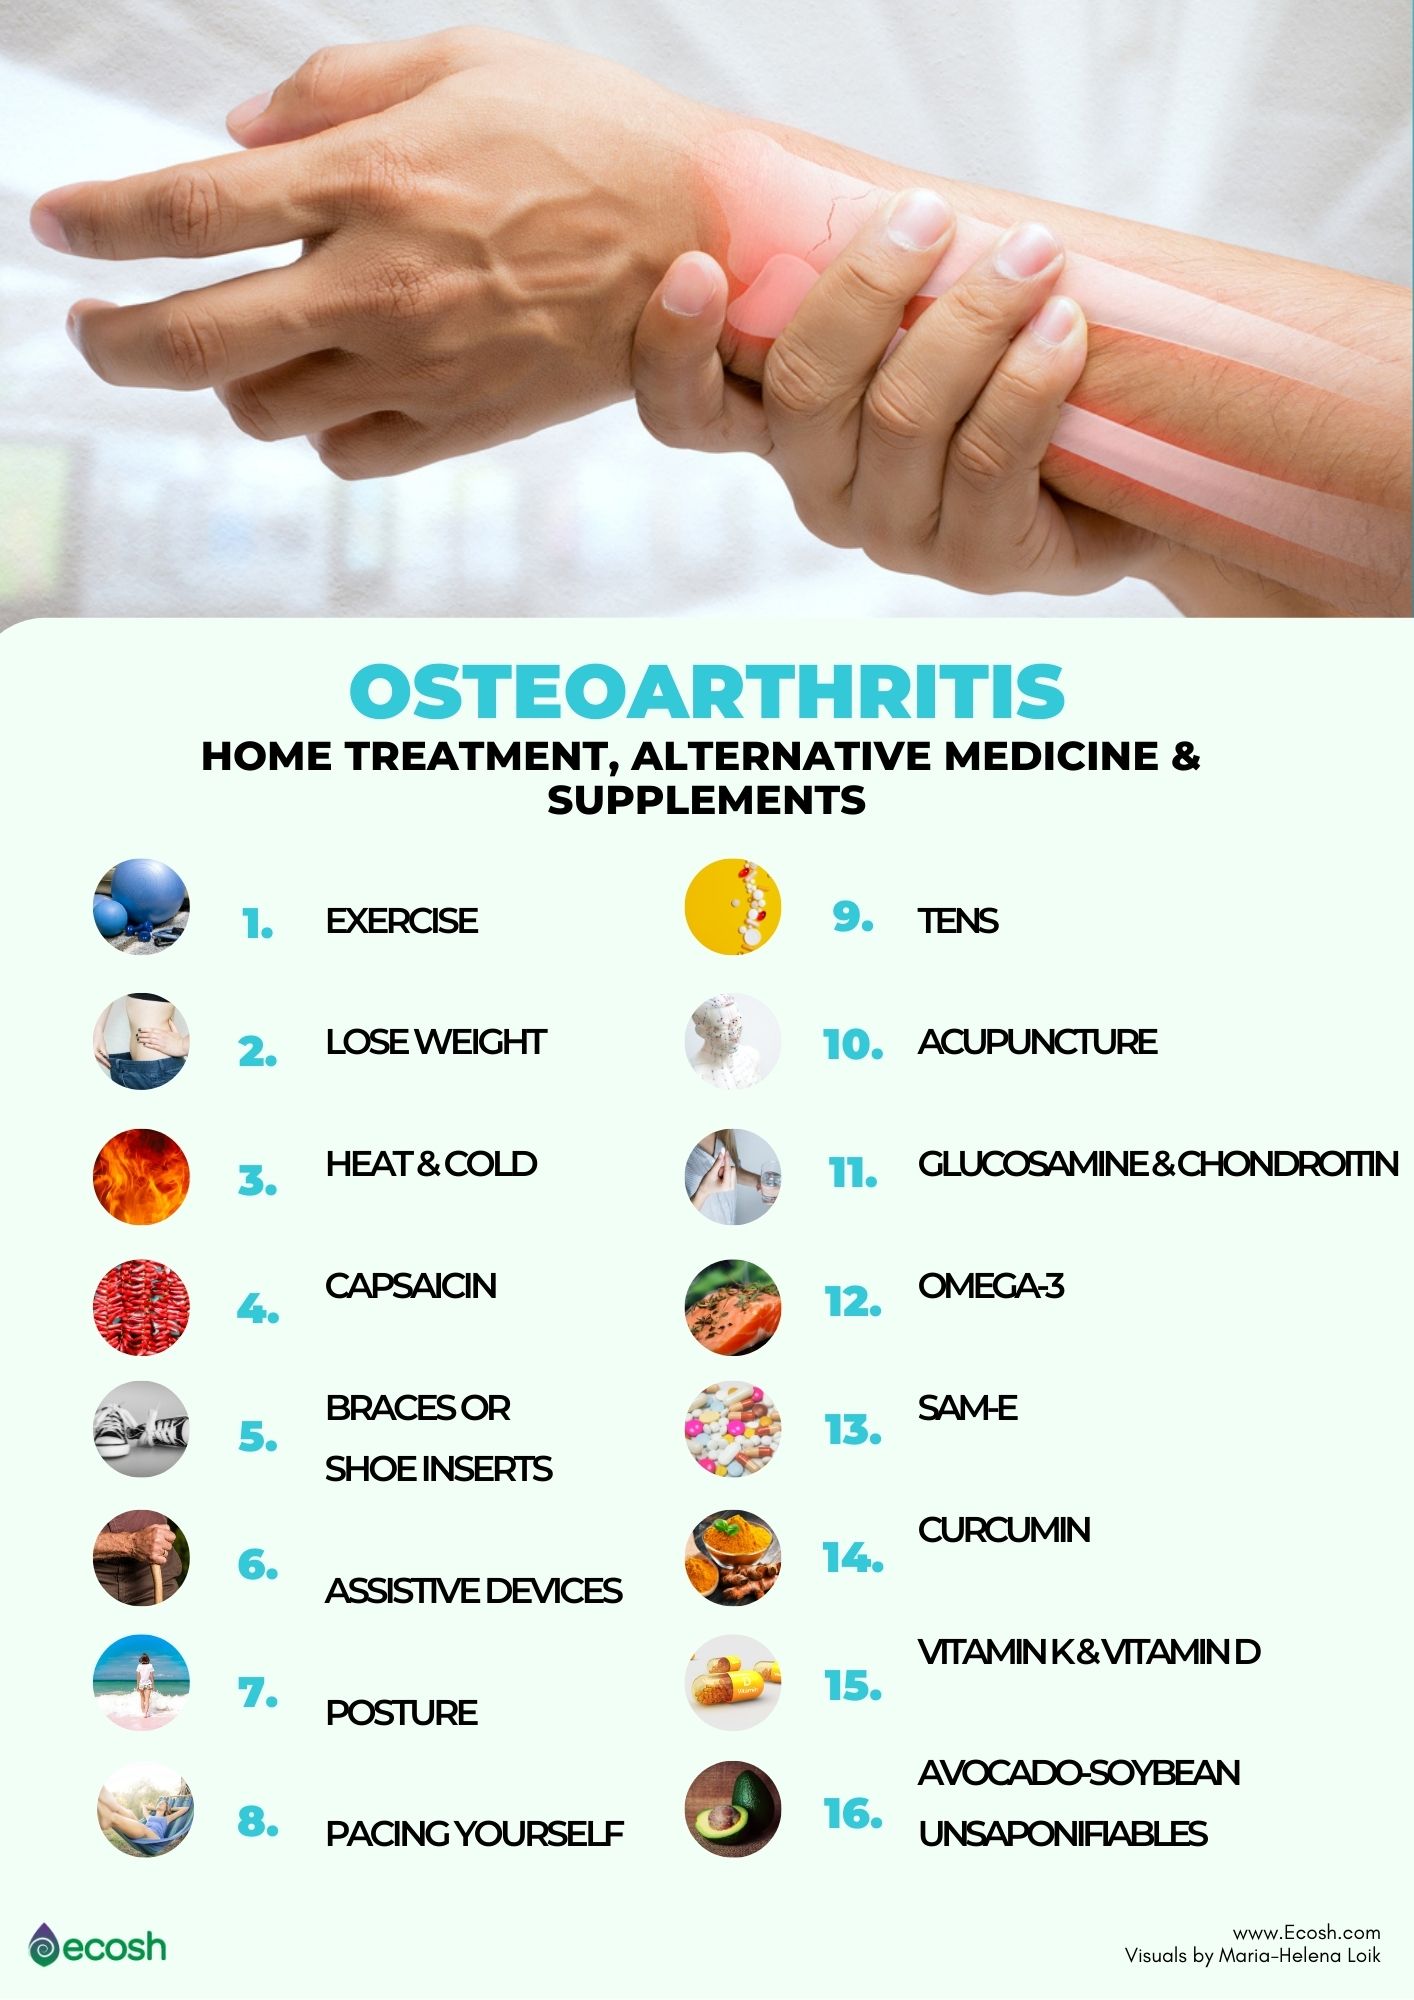 osteoarthritis treatment